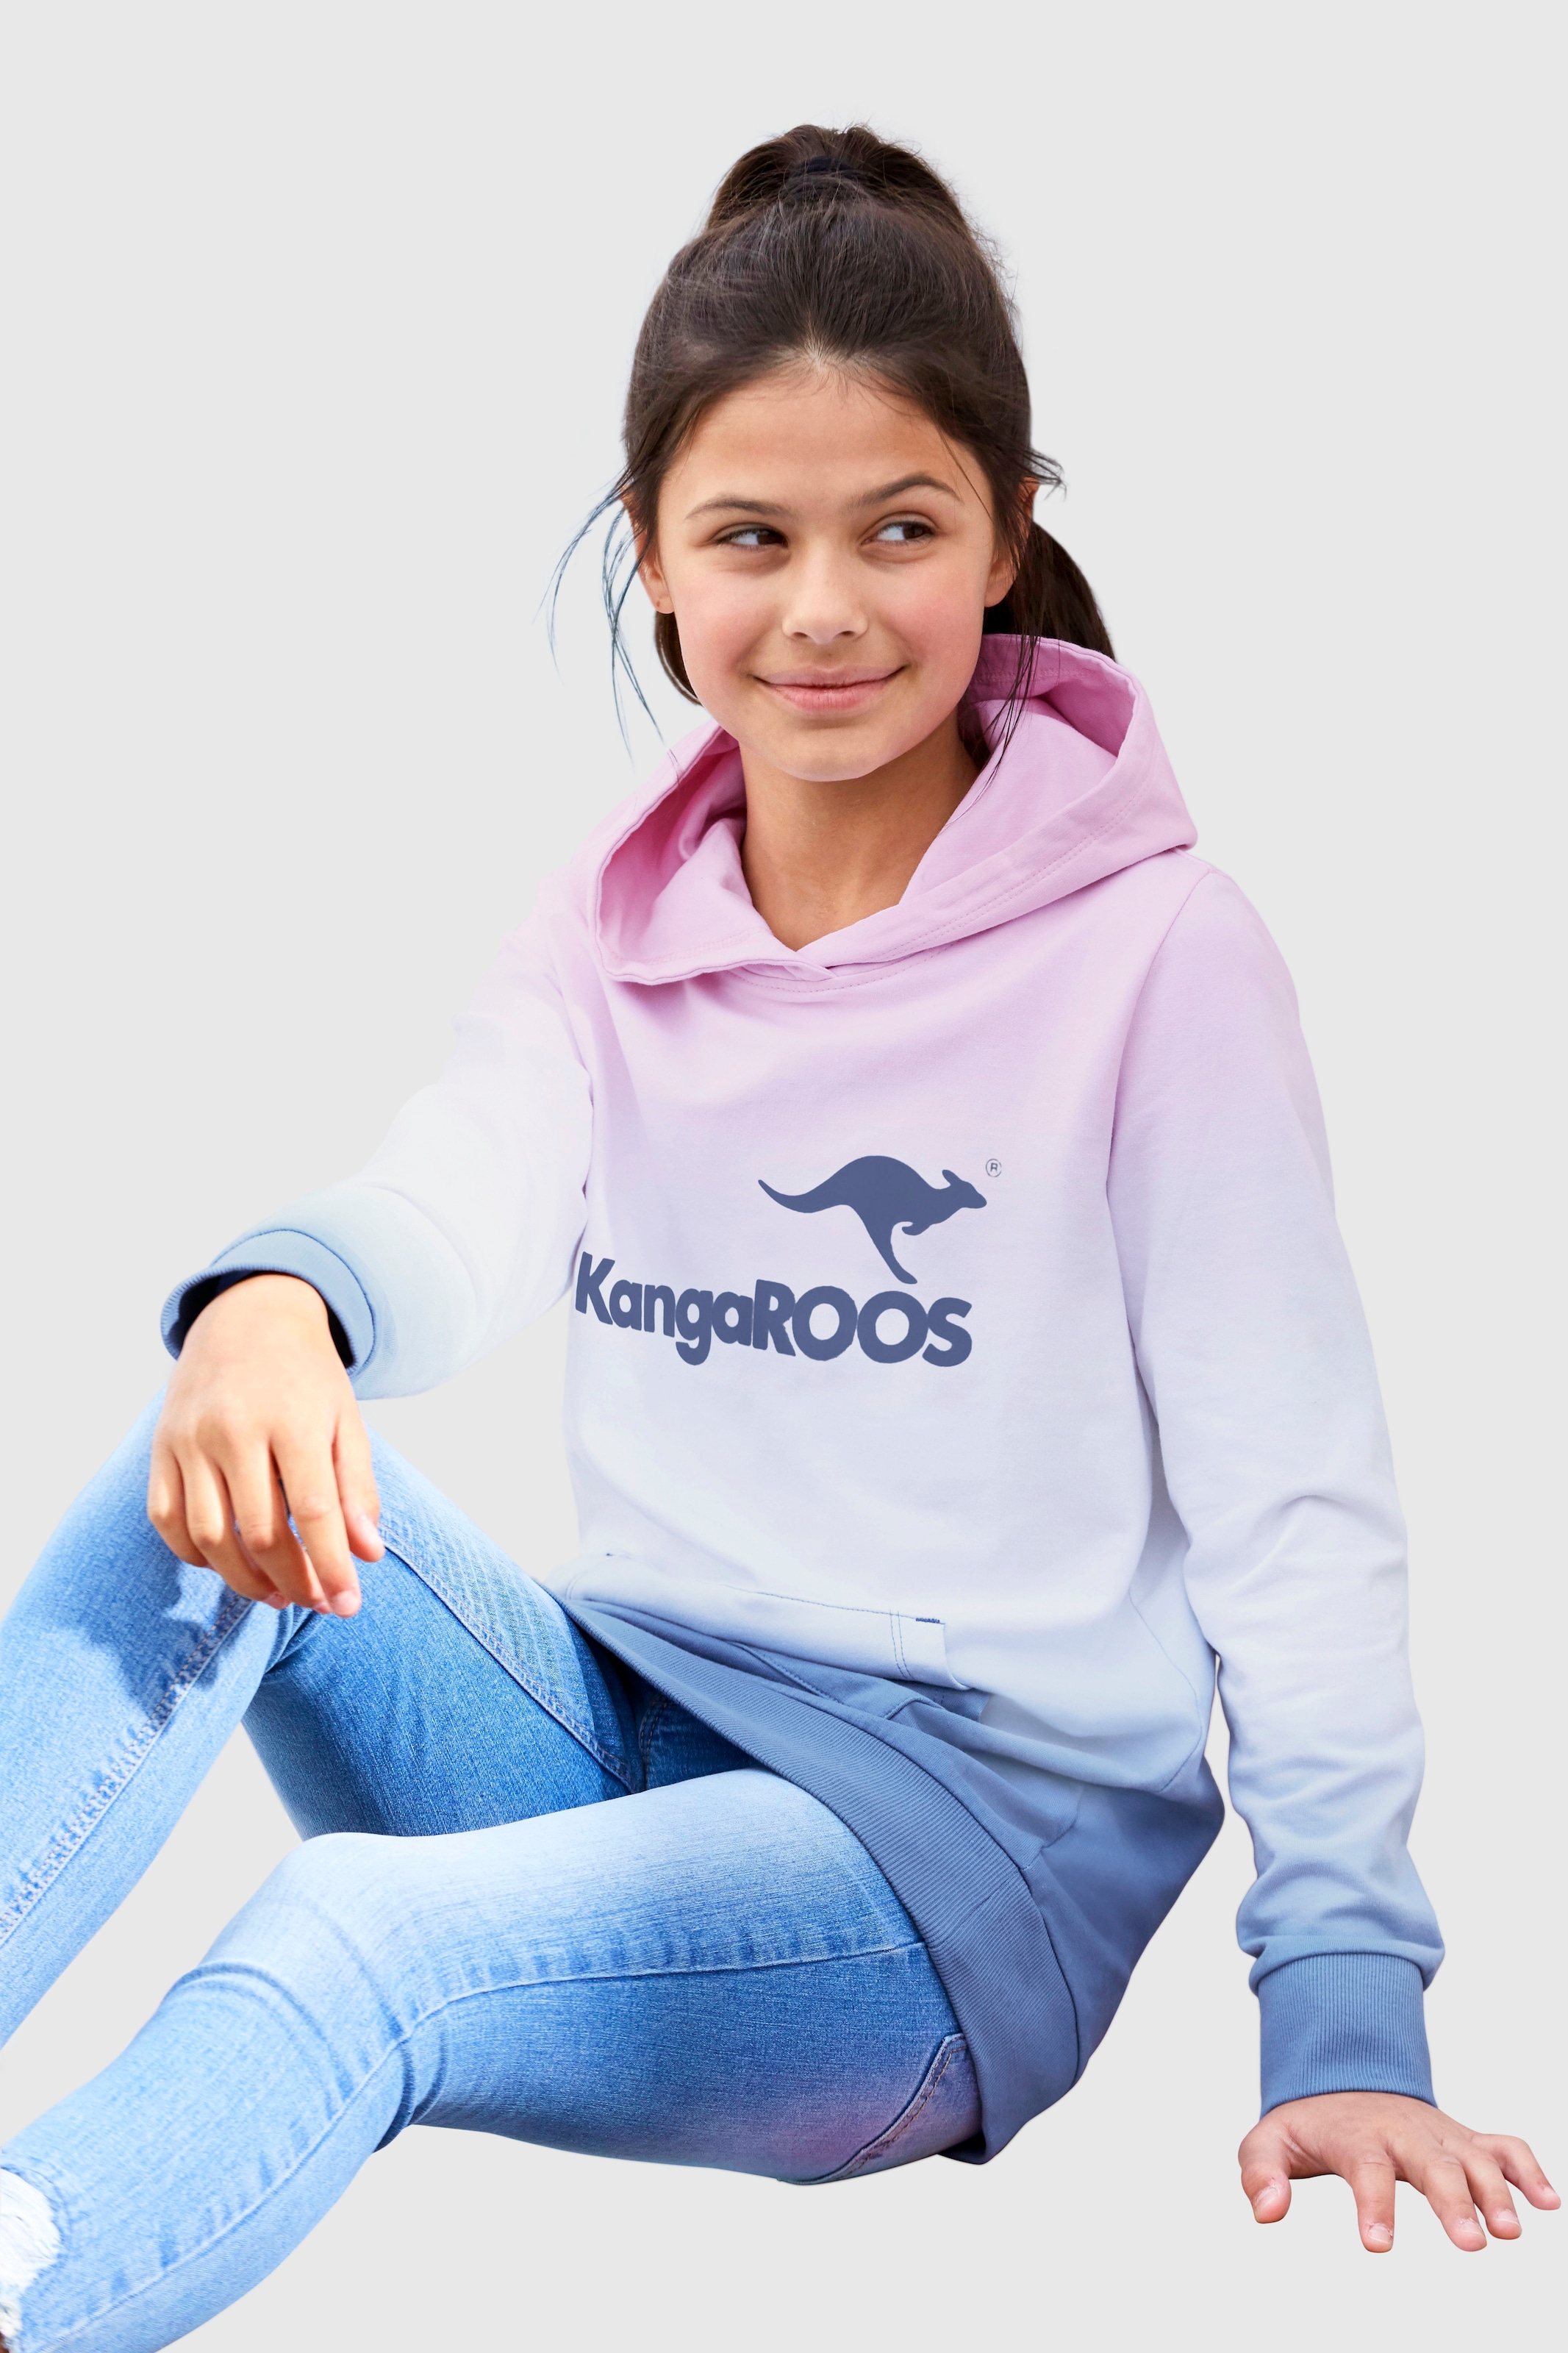 KangaROOS Kapuzensweatshirt, im modischen Farbverlauf kaufen | BAUR